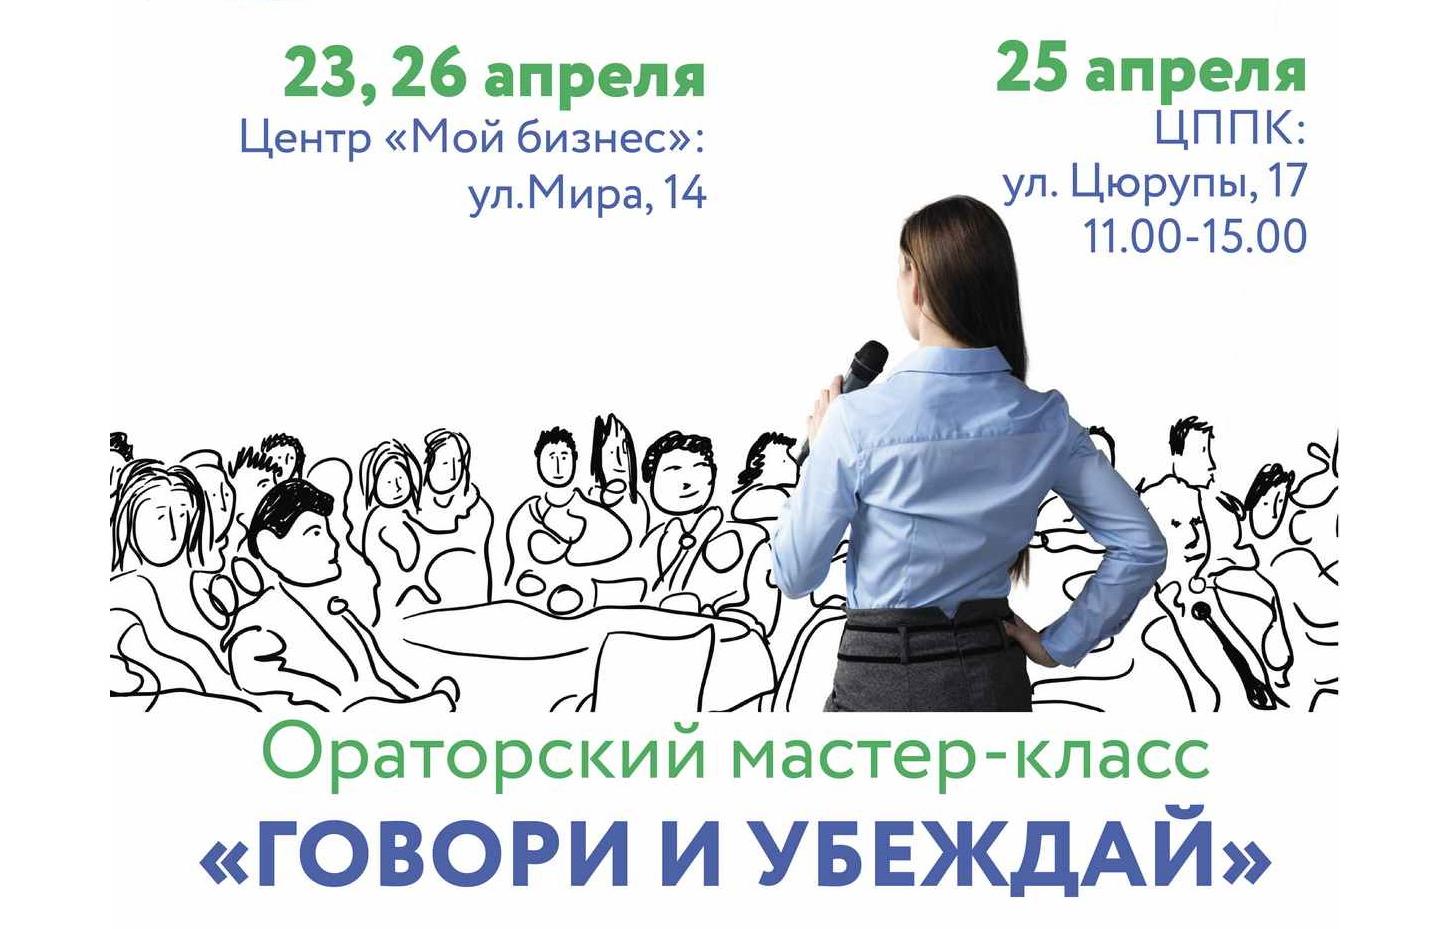 Сила слова: в Башкортостане для предпринимателей и самозанятых пройдет серия мастер-классов по ораторскому искусству